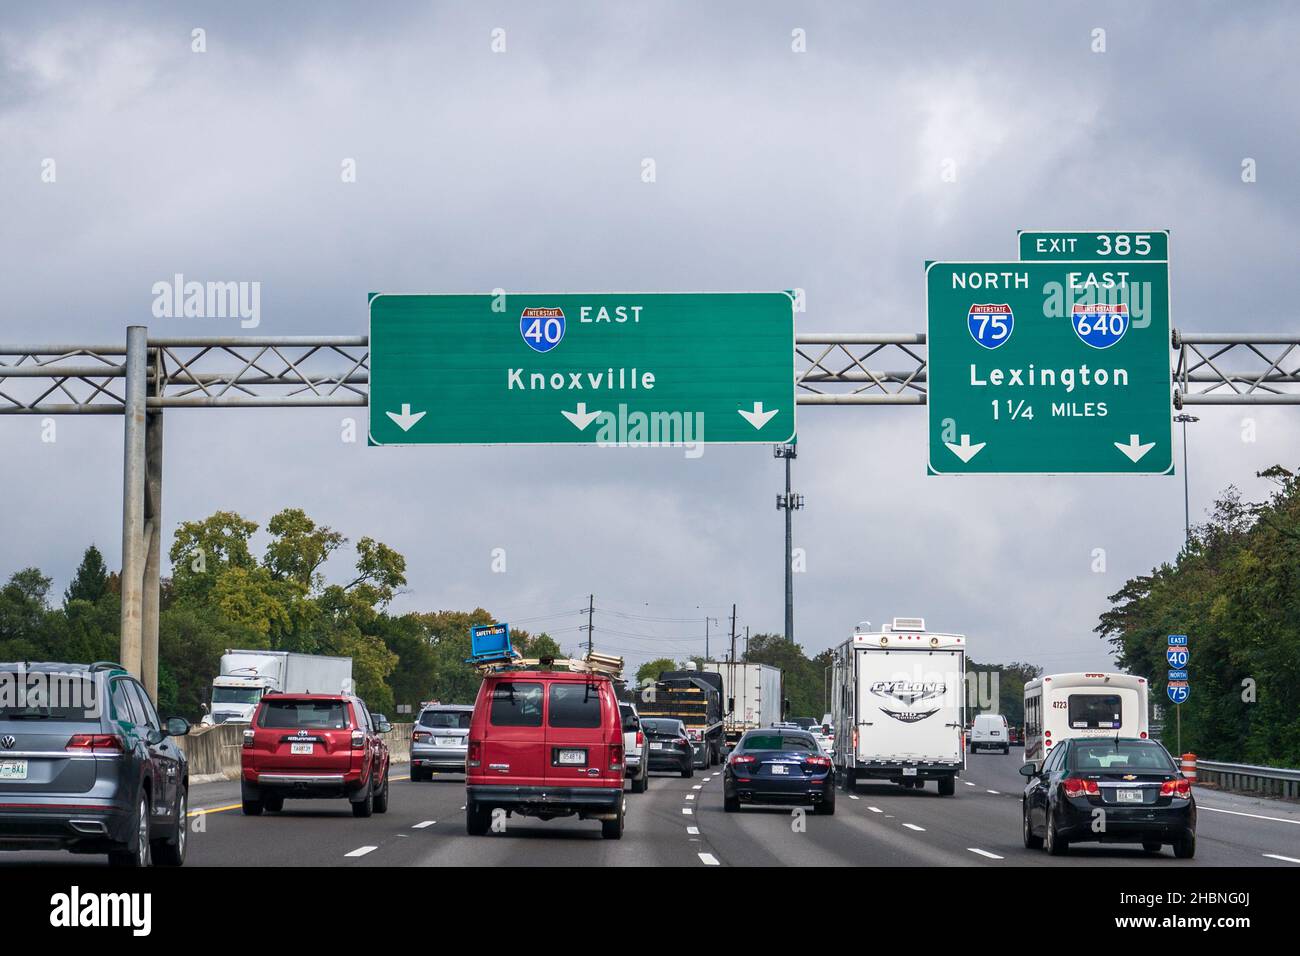 Knoxville, TN - 25 octobre 2021 : panneaux sur l'Interstate 40 en direction de Knoxville et sortie 385 pour l'I-75 North et l'I-640 East en direction de Lexington, Kentucky. Banque D'Images